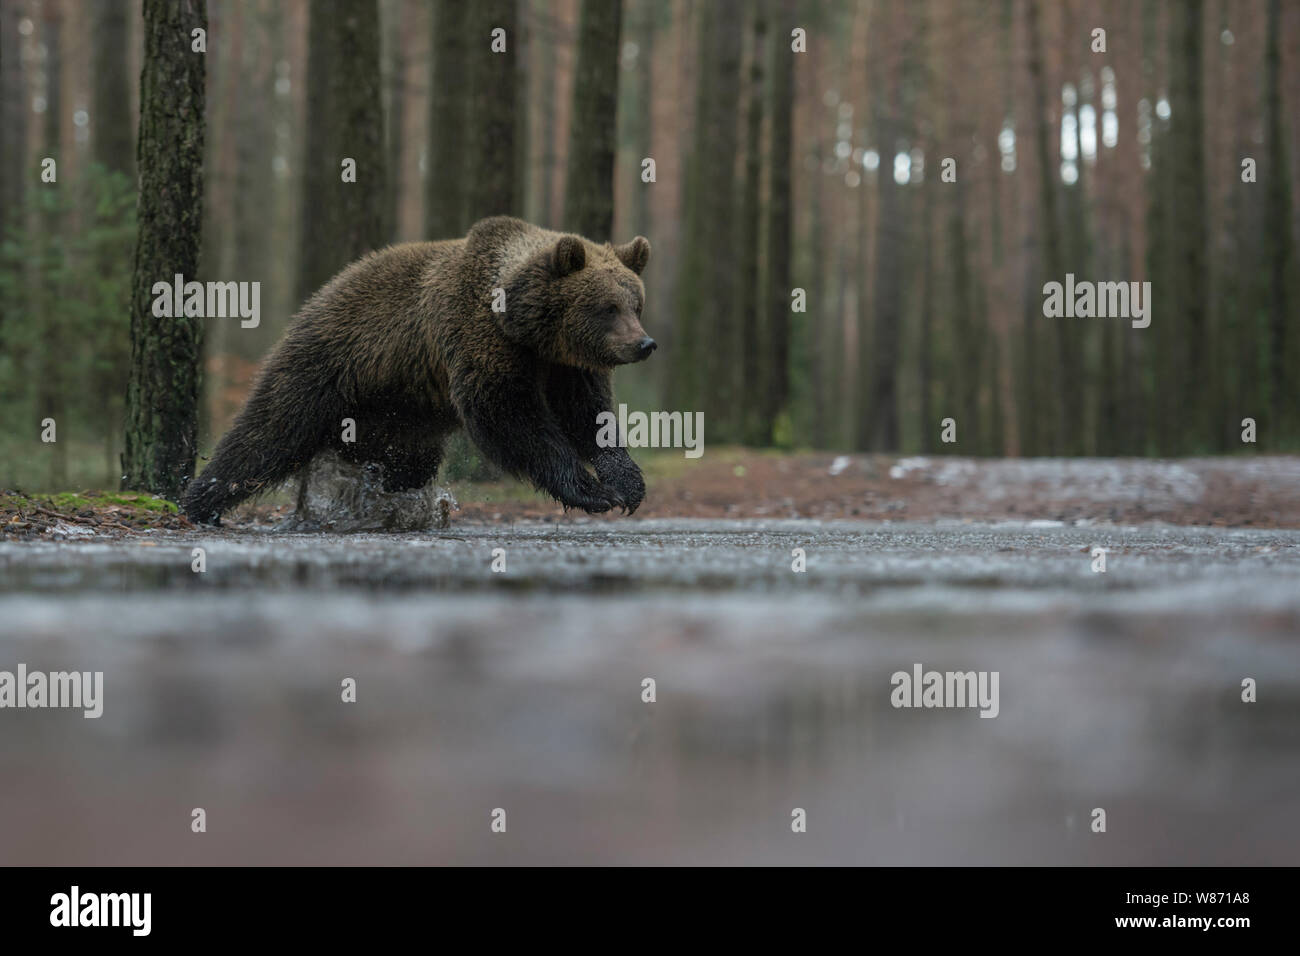 Eurasian orso bruno ( Ursus arctos ), giovani cub, adolescente, correre, saltare attraverso una pozzanghera congelata, attraversare una strada forestale in inverno, l'Europa. Foto Stock